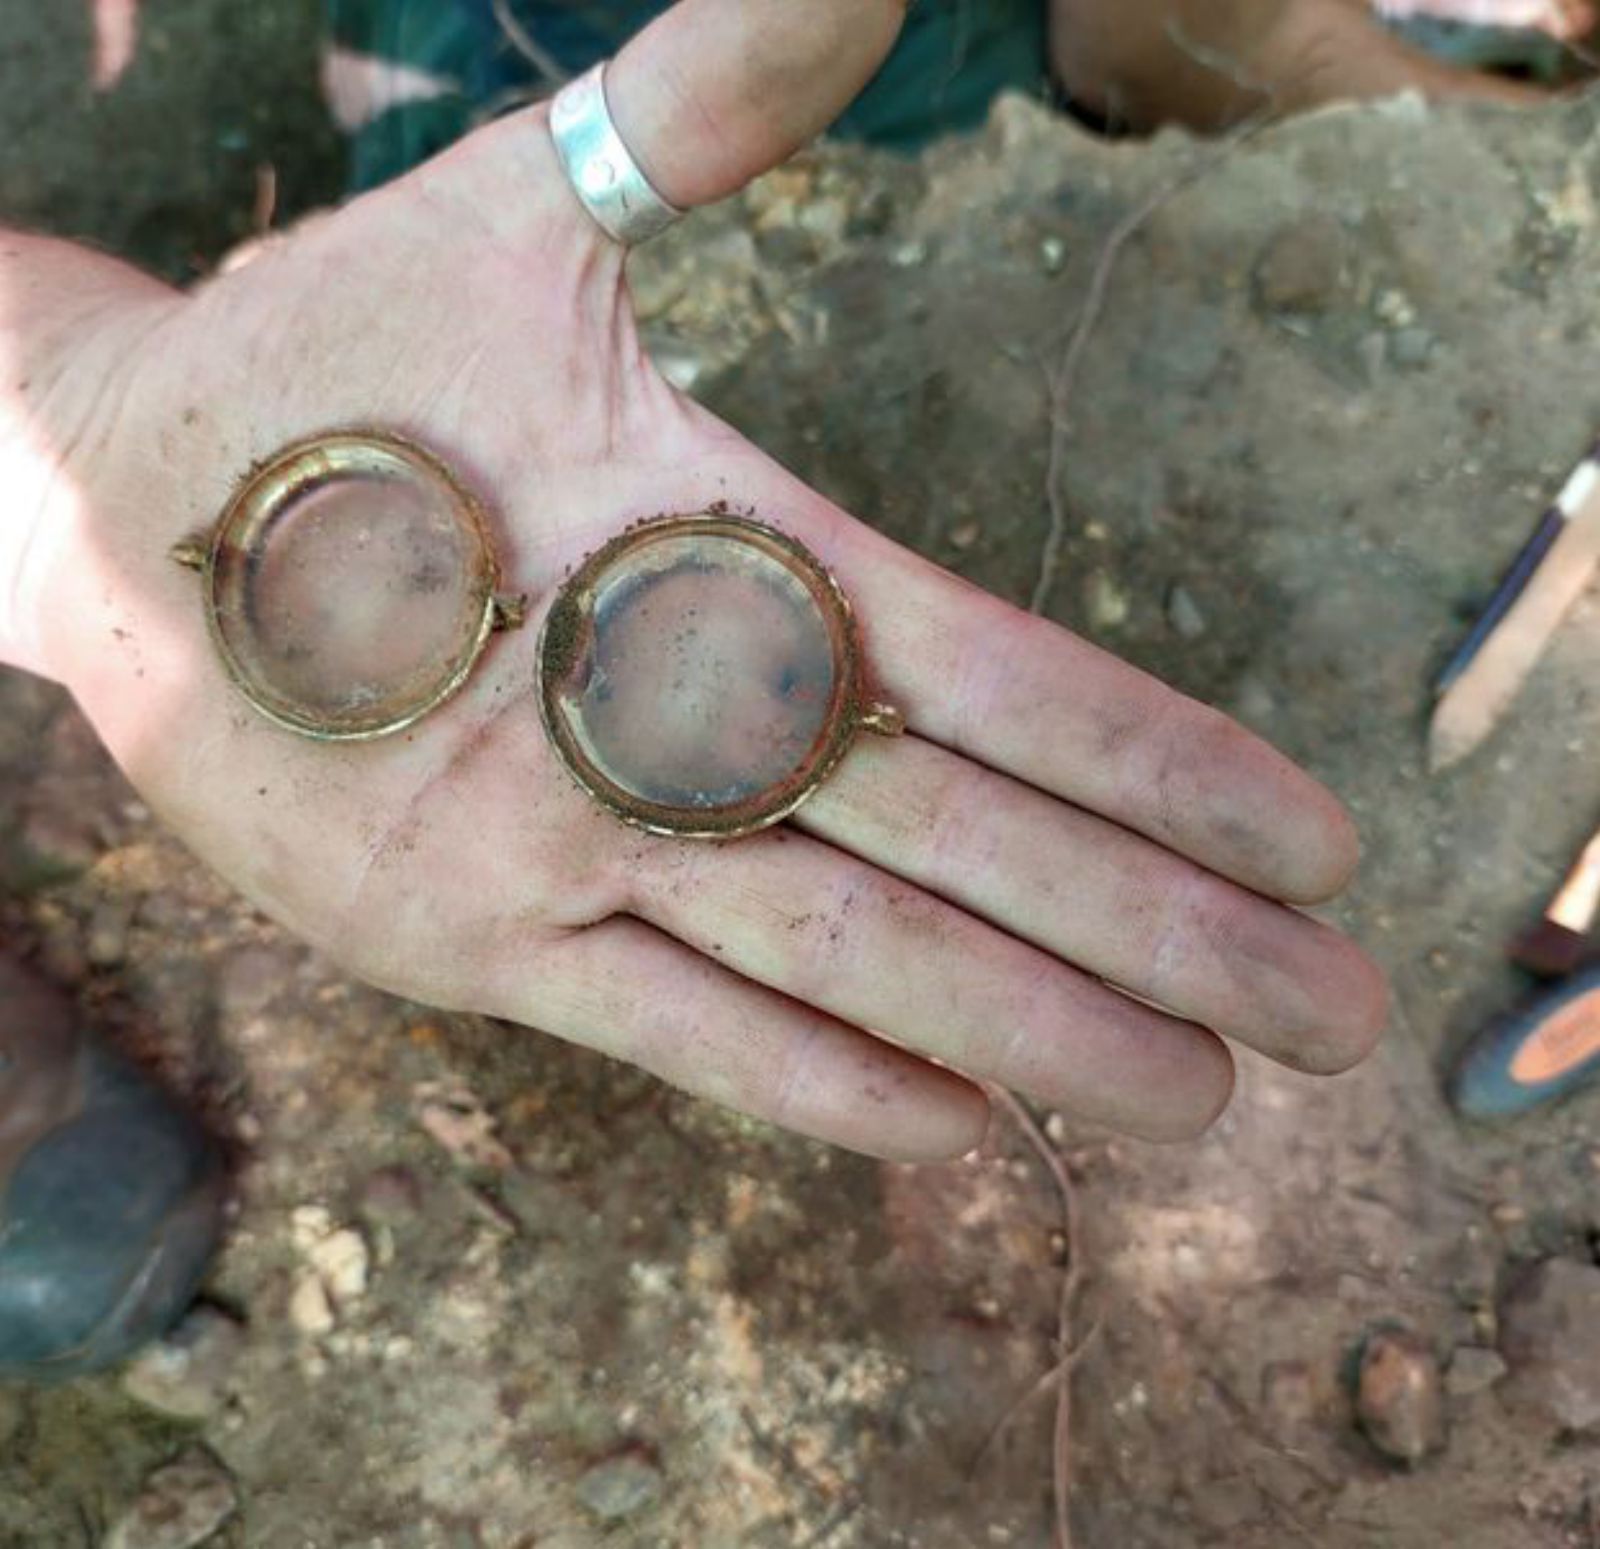 Las gafas halladas entre los objetos personales. | Óscar Rodríguez